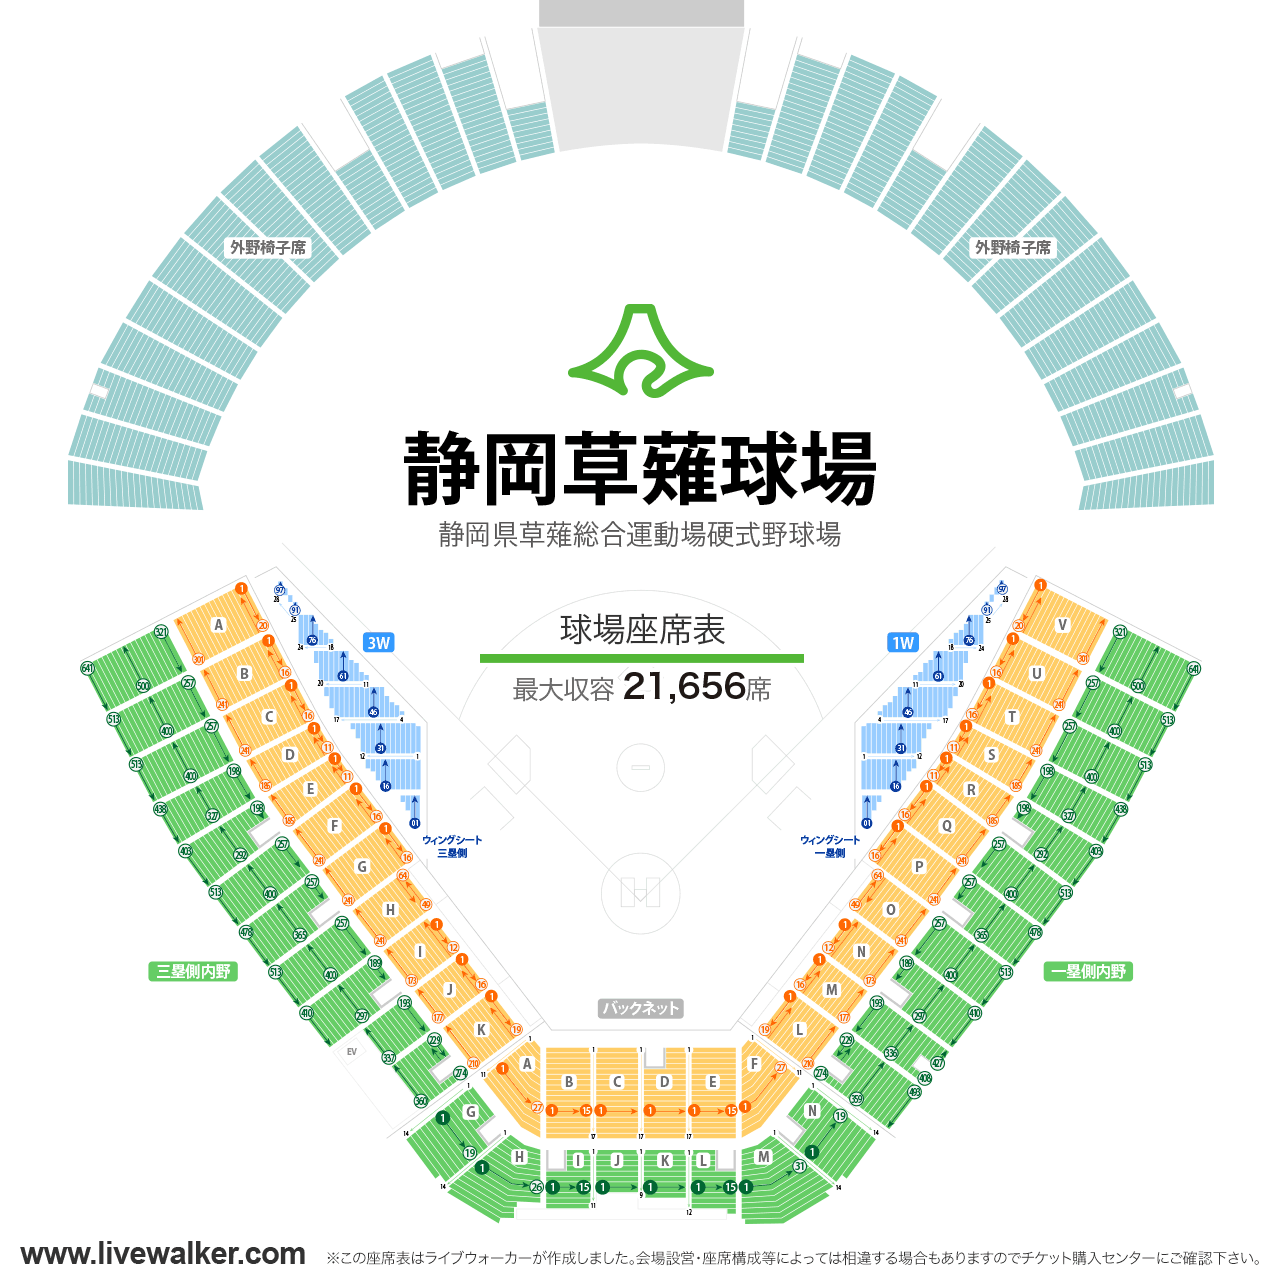 静岡草薙球場球場の座席表